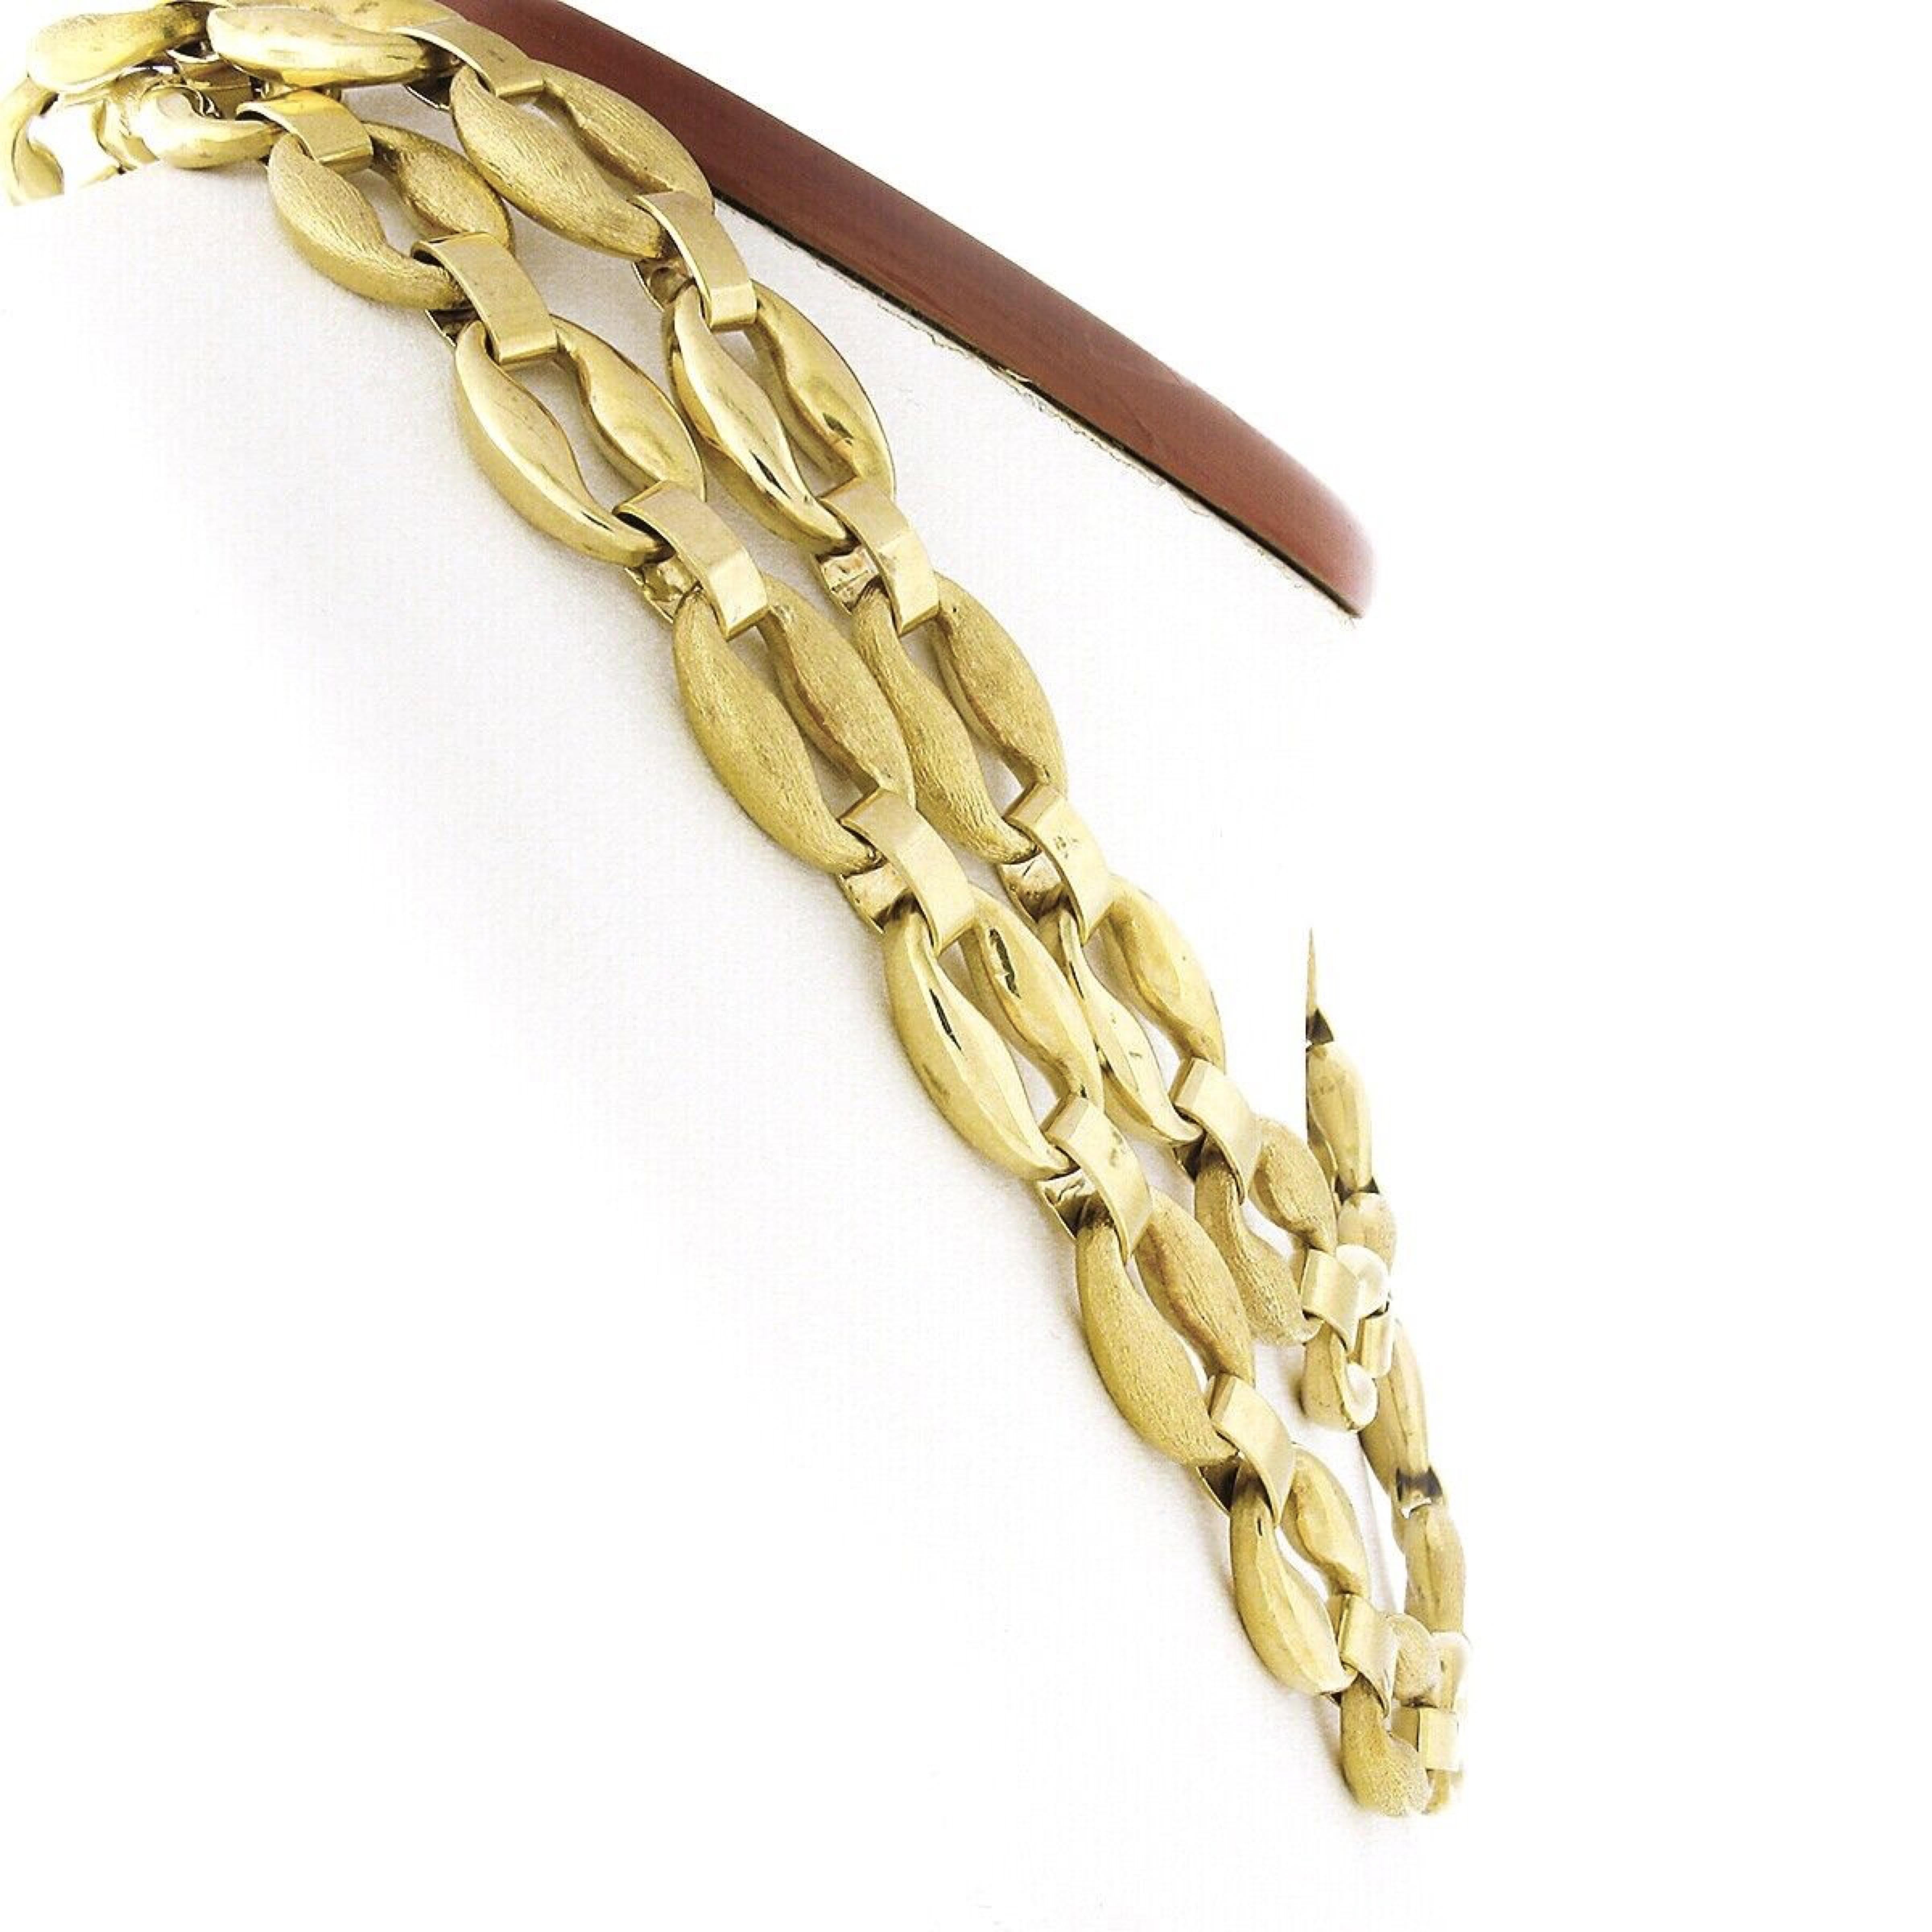 Diese lange und ausgefallene Kette Halskette ist sehr gut in massivem 18k Gelbgold gefertigt und verfügt über ein schönes Design, das aus großen ovalen Gliedern, die mit einem hochglanzpolierten und gebürstetem Finish abwechselnd ganz über eine